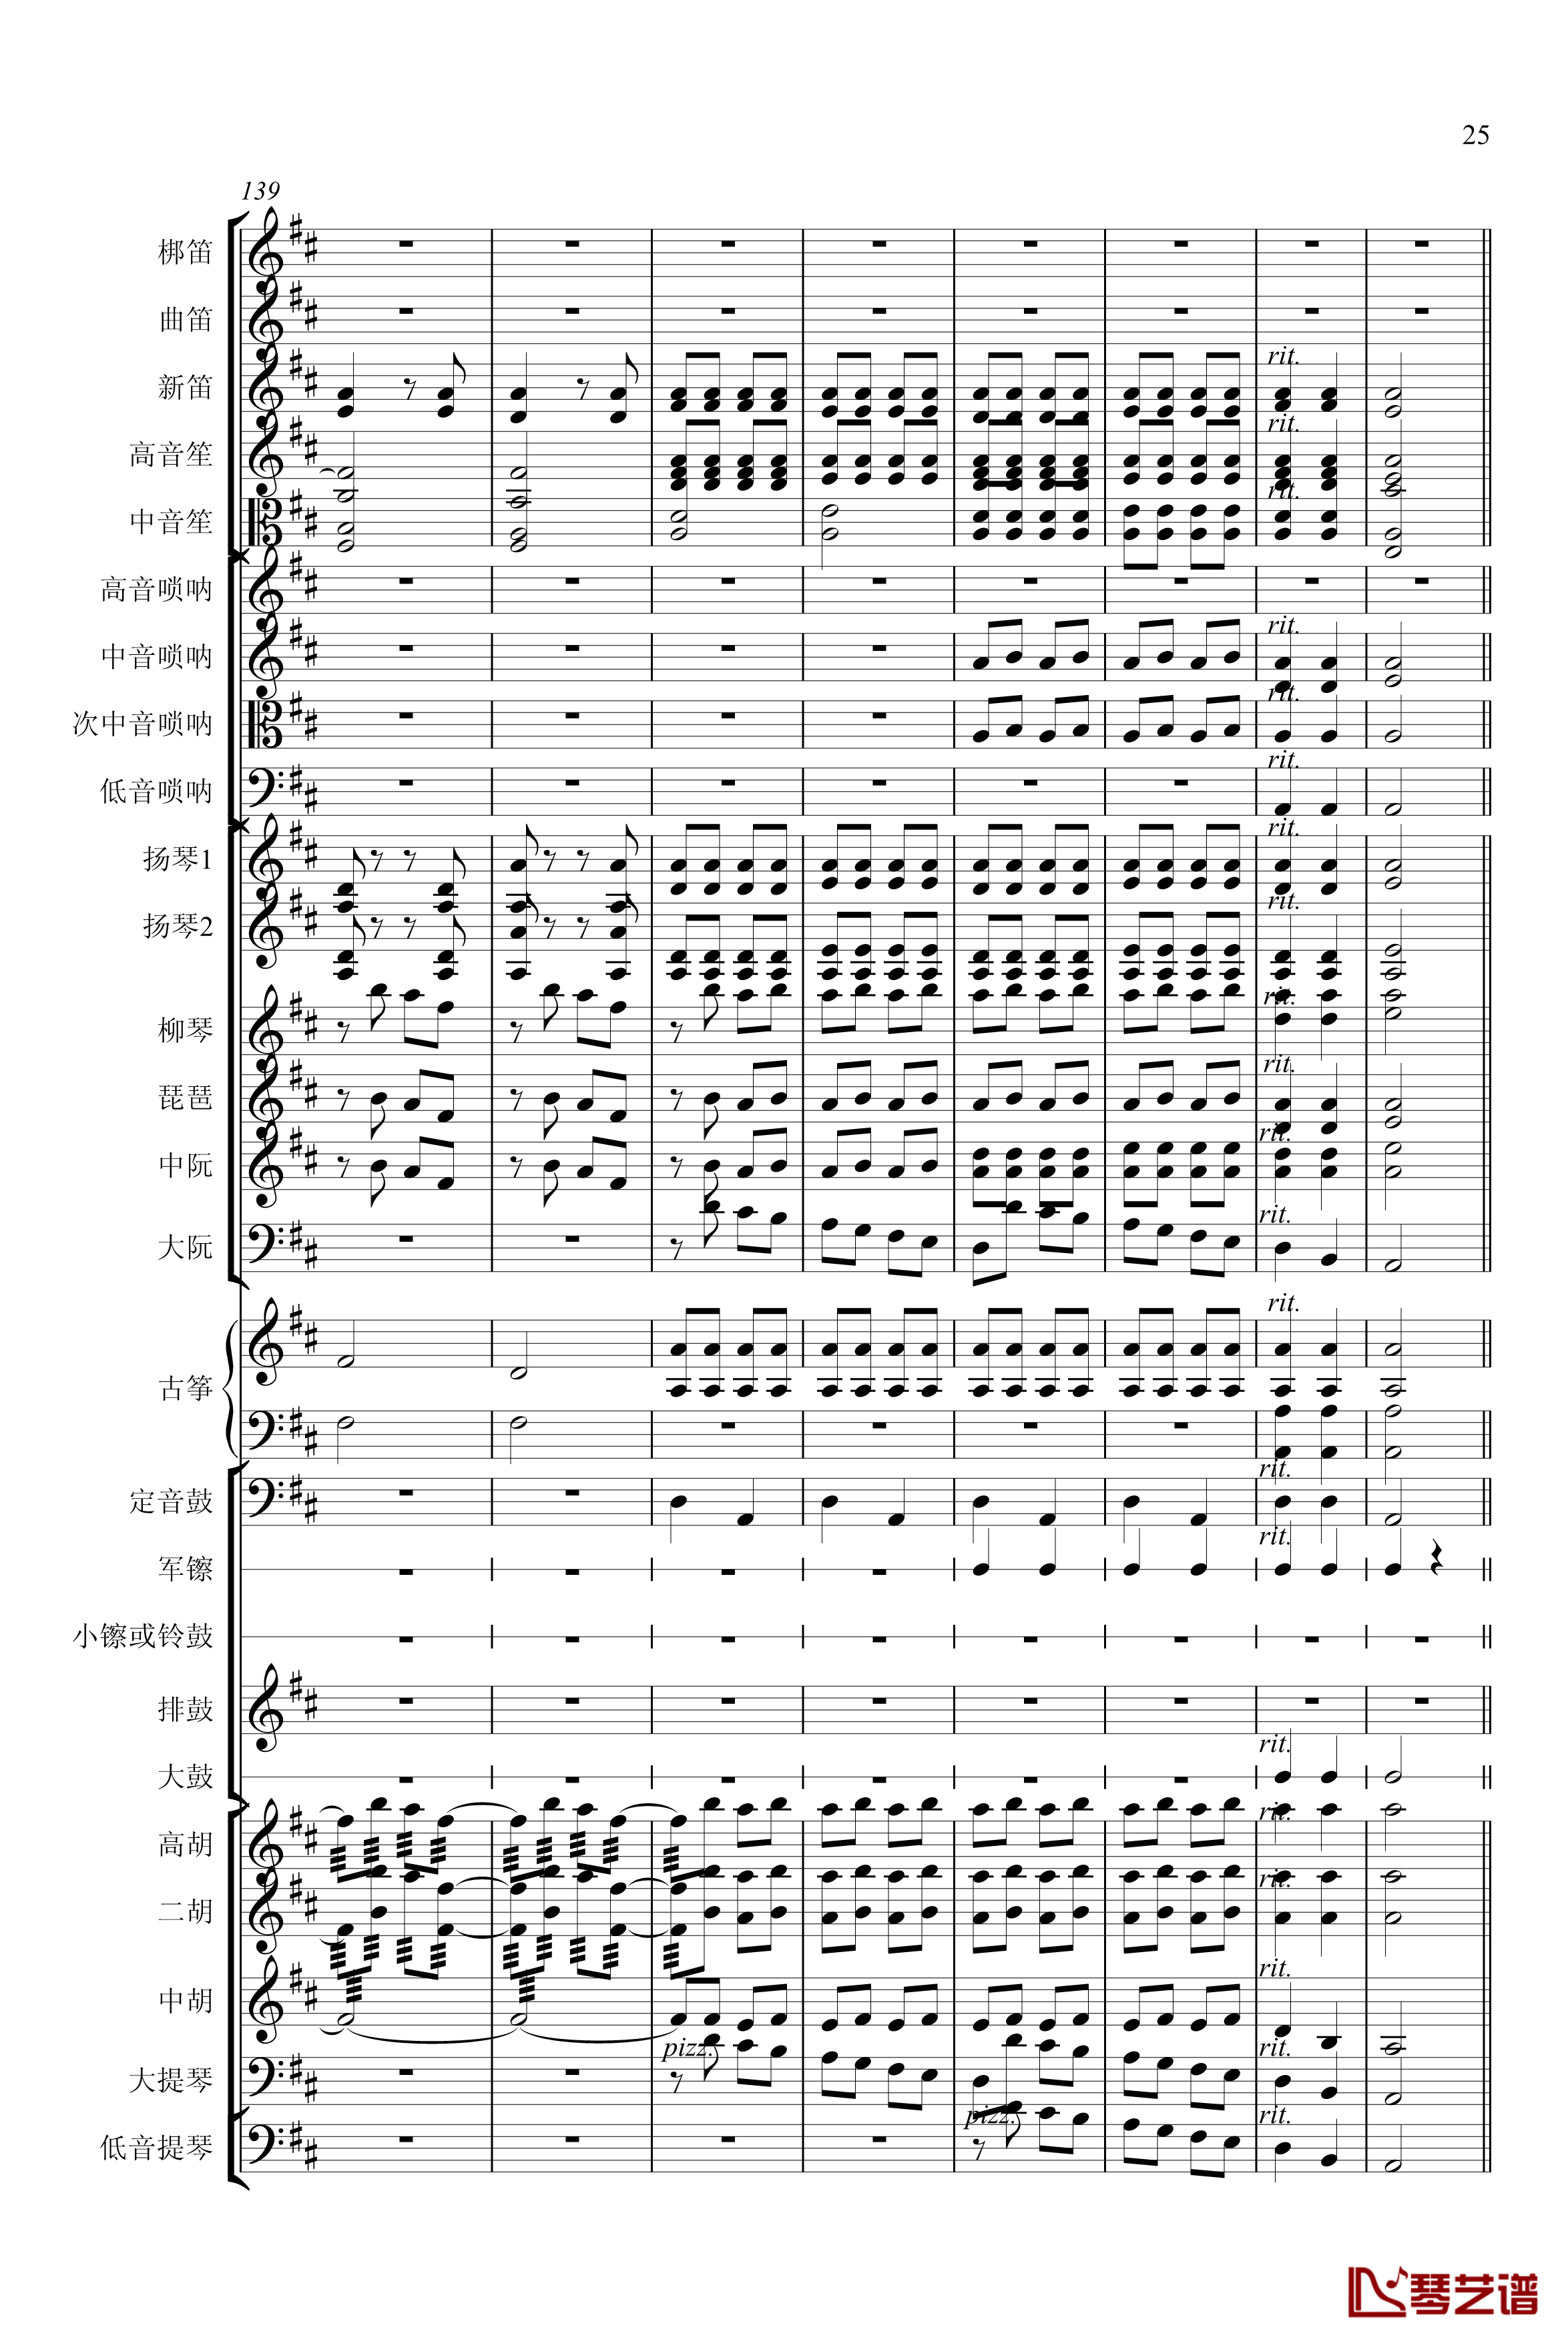 春节序曲钢琴谱-专业总谱-中国名曲25